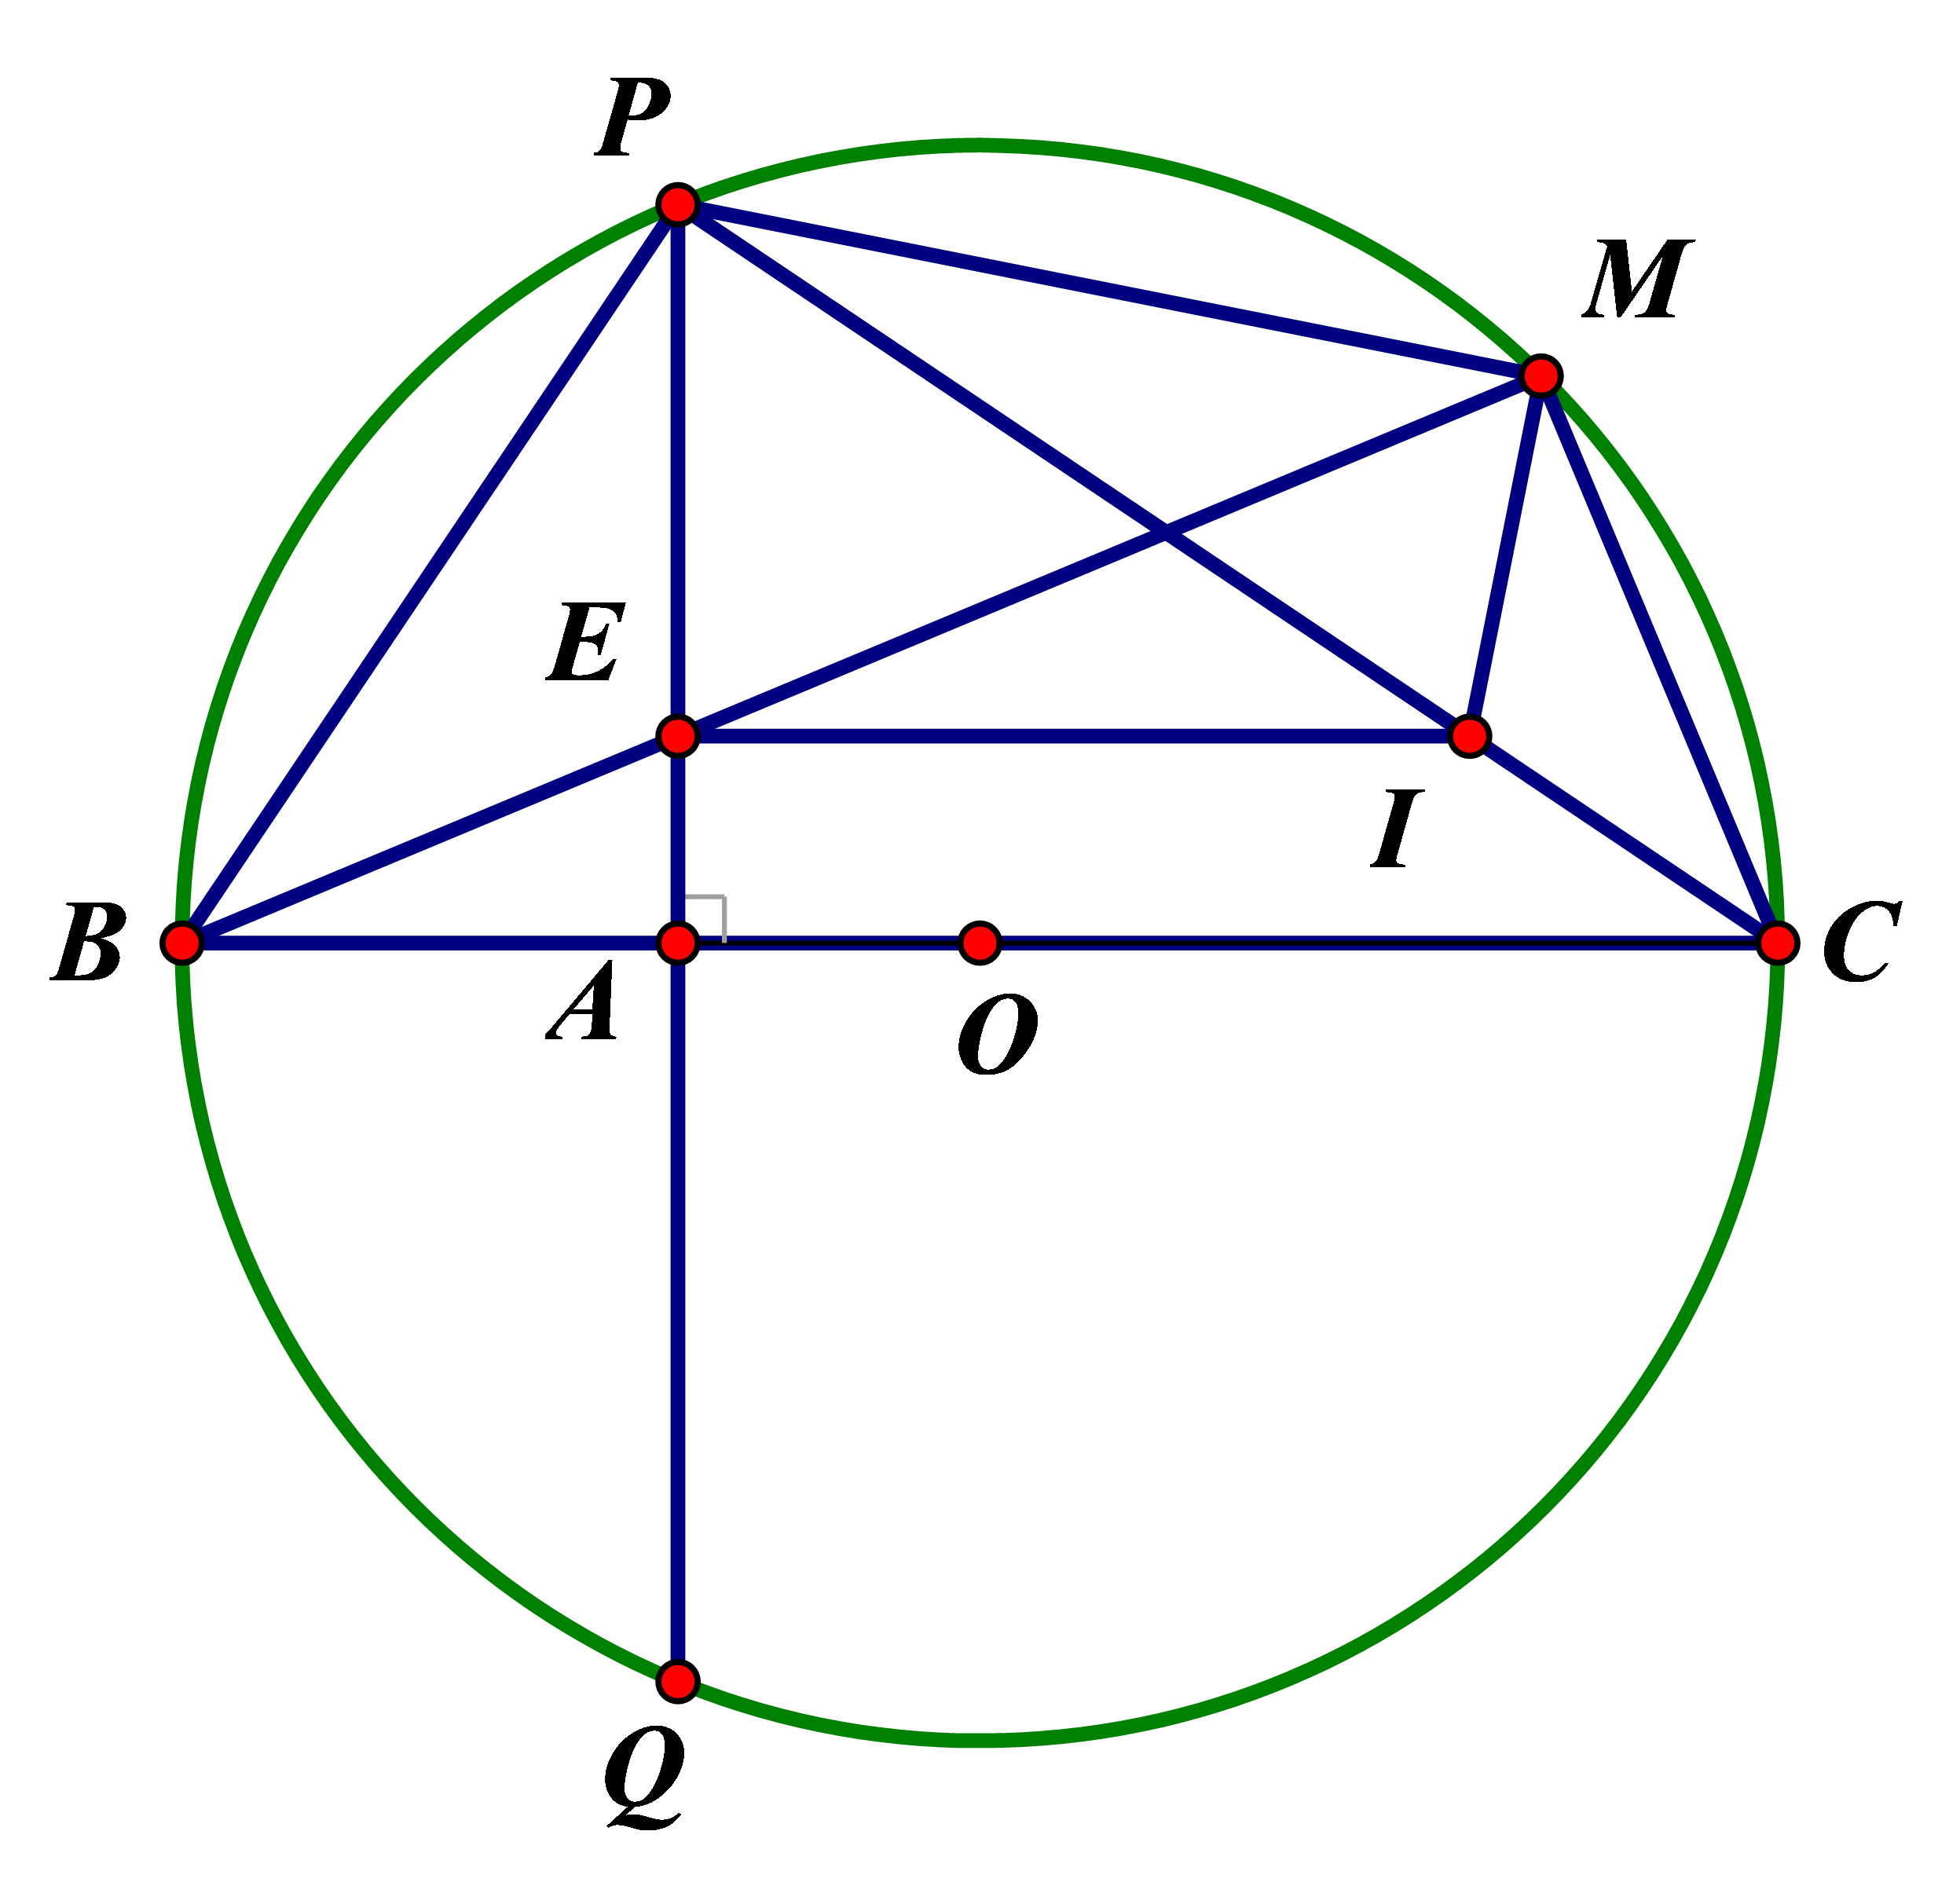 Cho đường tròn (O; R), đường kính BC cố định và điểm A cố định thuộc đoạn thẳng OB (A không trùng với O và B). Kẻ dây PQ ⊥ BC tại A. Lấy M thuộc cung lớn PQ (M không trùng với C). Nối BM cắt PQ tại E. Chứng minh: (ảnh 1)